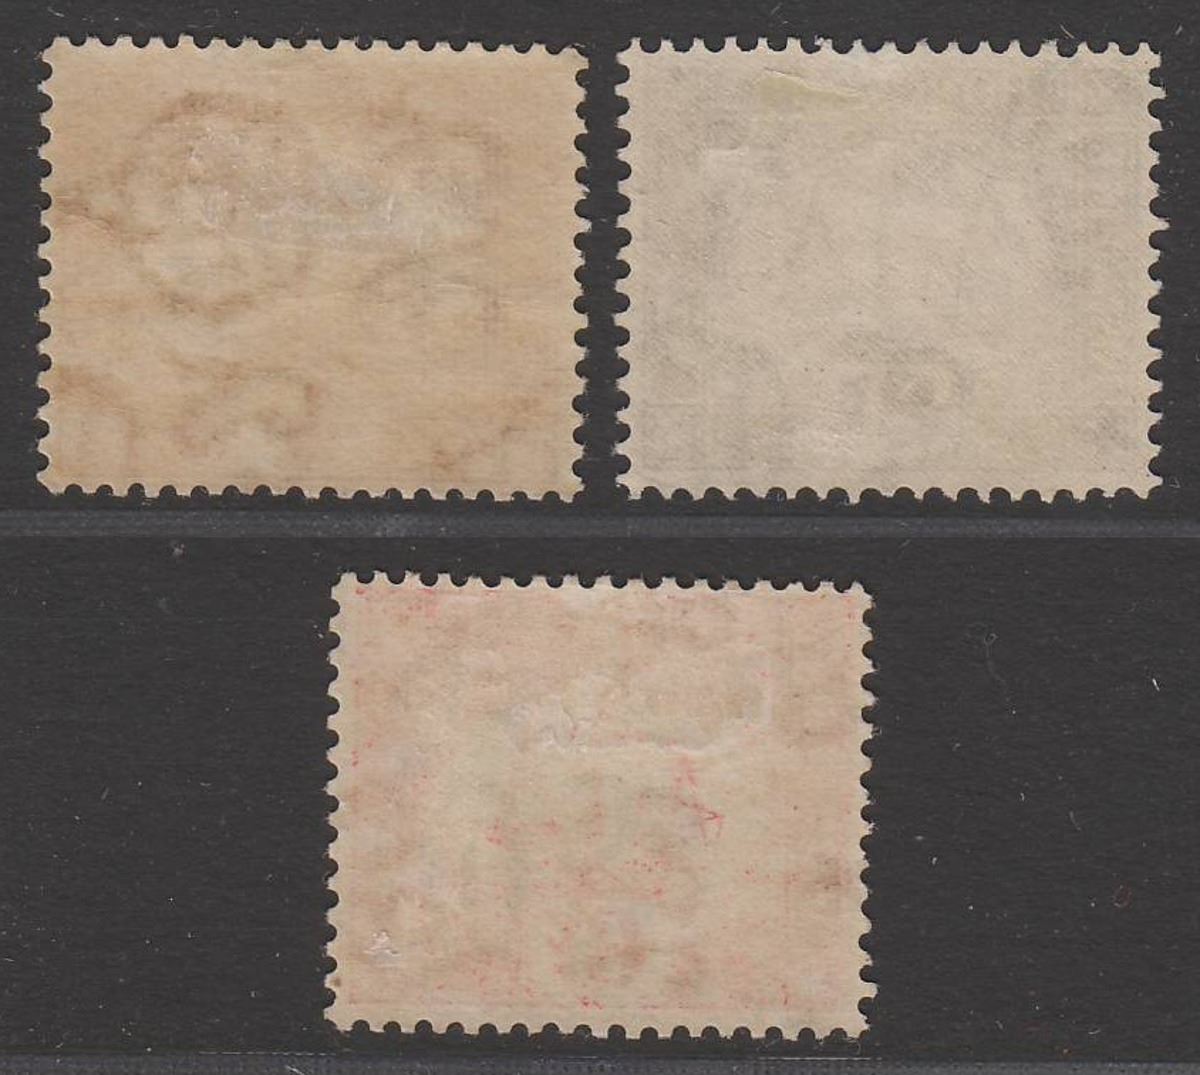 Hong Kong 1938 KGVI Postage Due wmk Sideways 2c, 4c, 6c Mint SG D6-D8